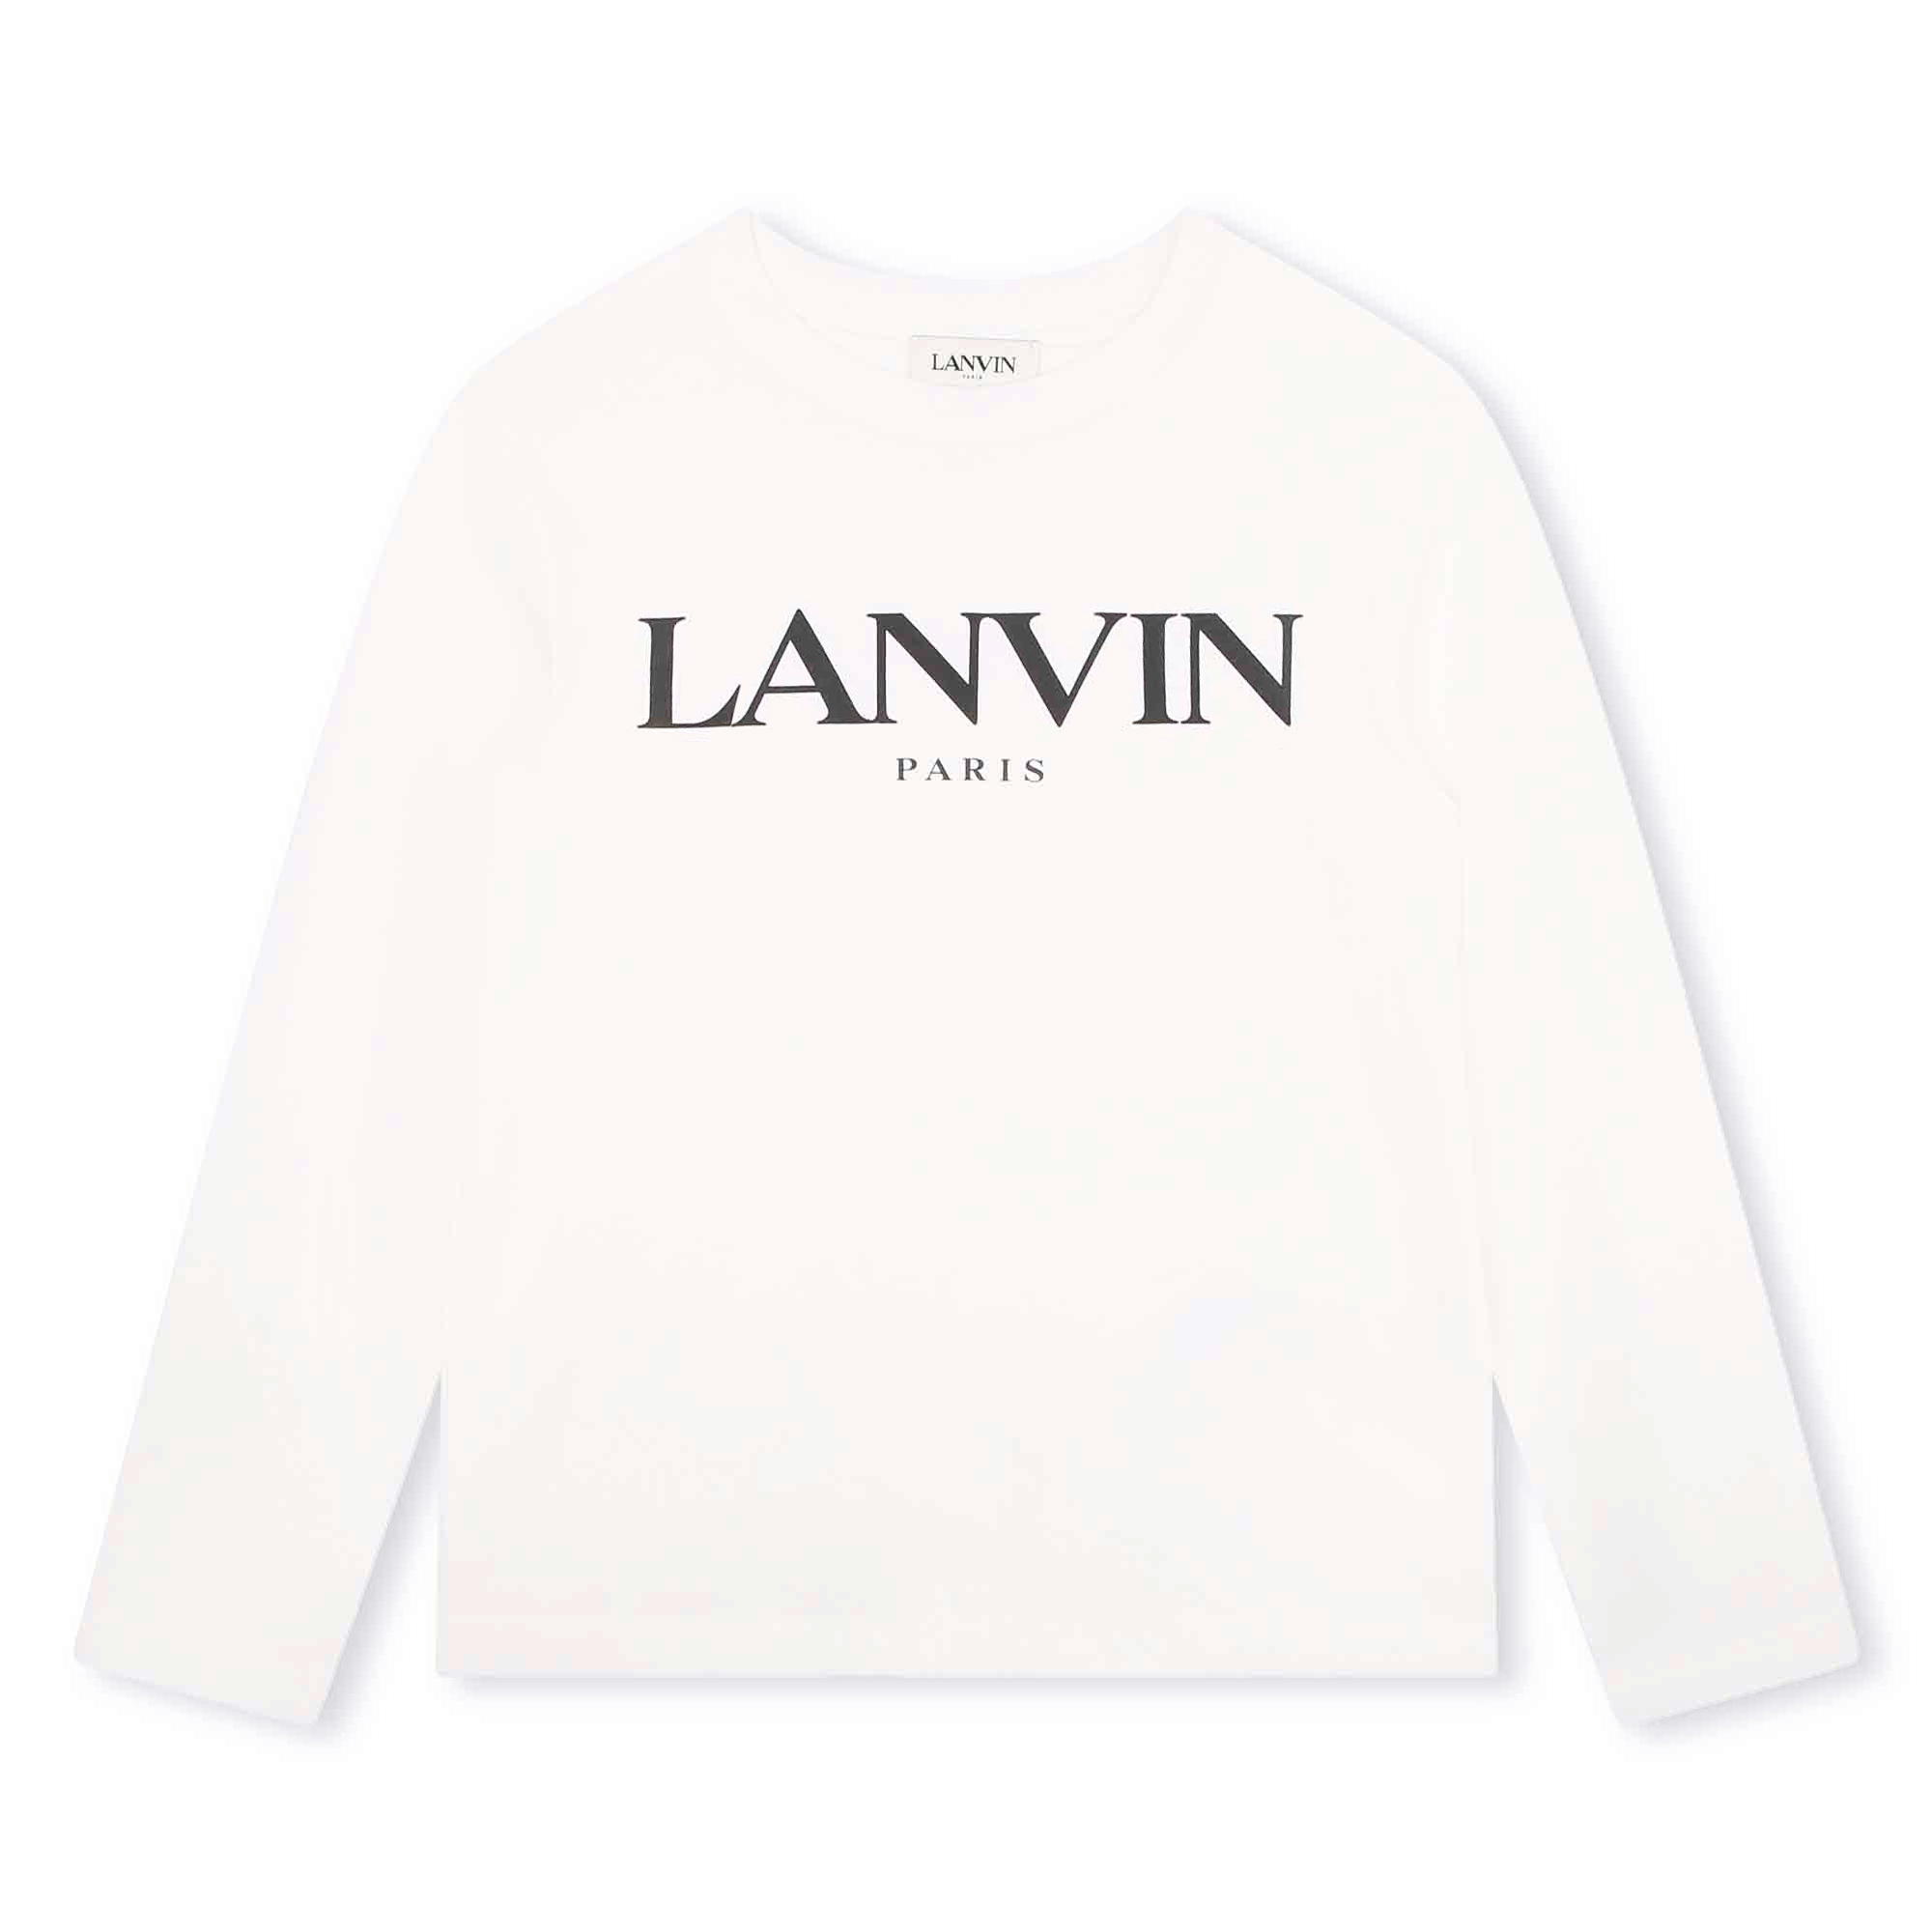 T-shirt met contrasterend logo LANVIN Voor